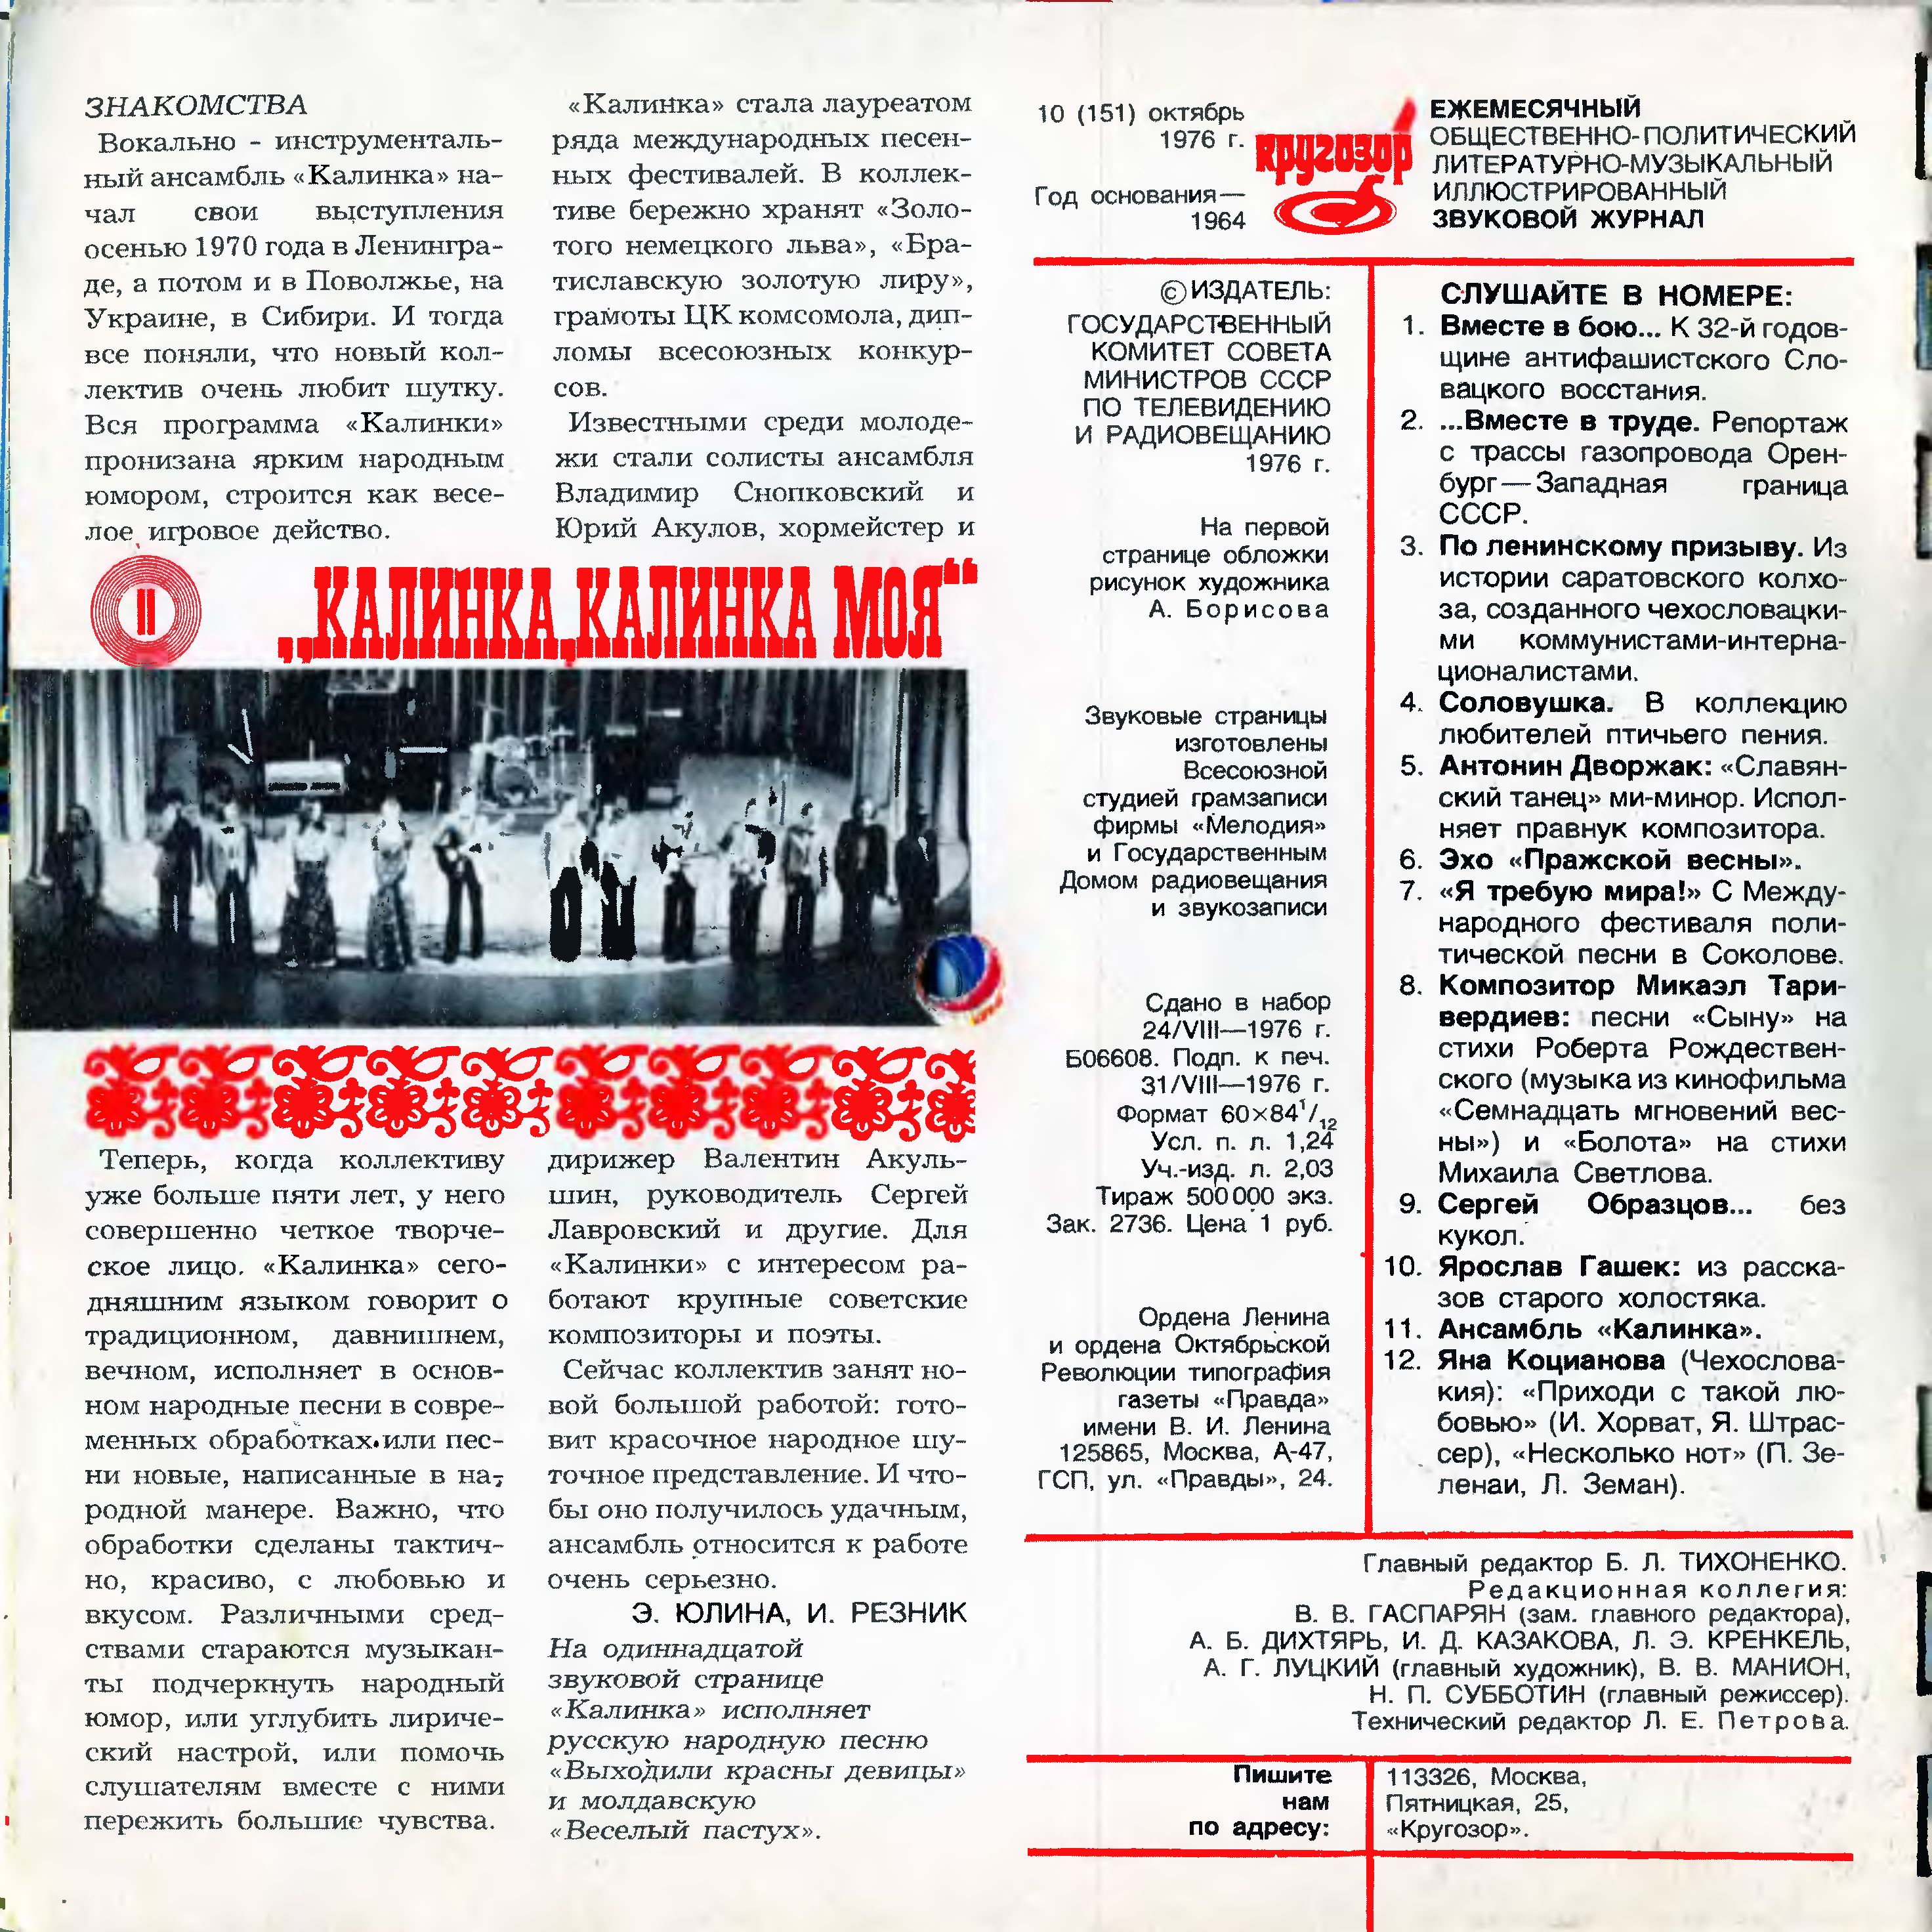 Кругозор 1976 № 10